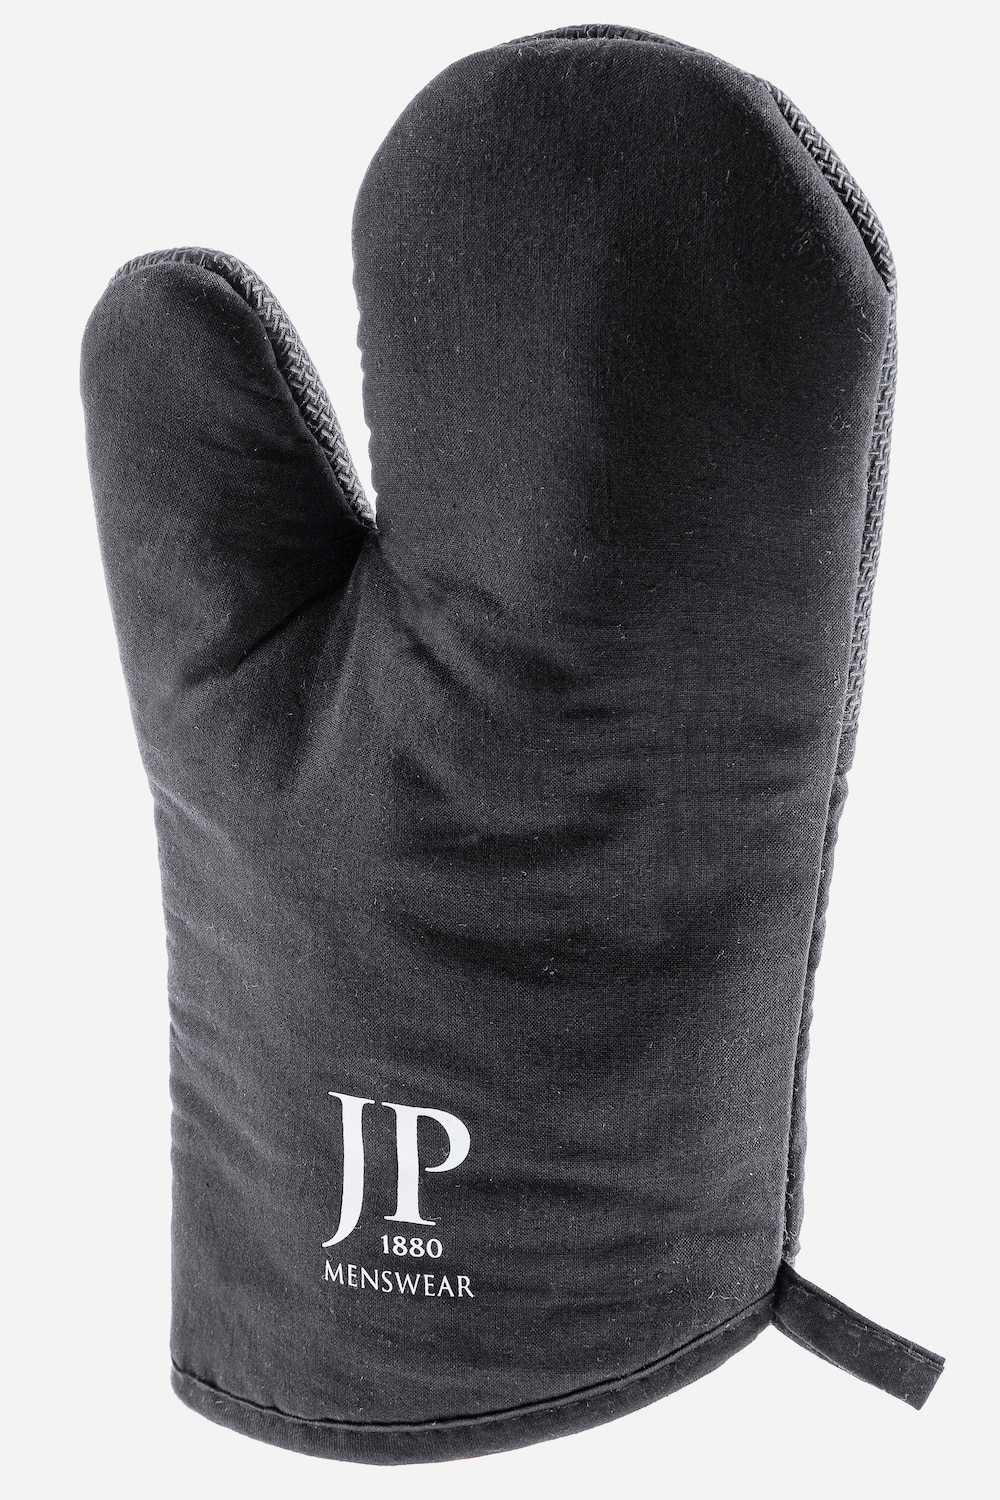 Grillhandschuh, Große Größen, Herren, schwarz, Größe: One Size, Baumwolle, JP1880